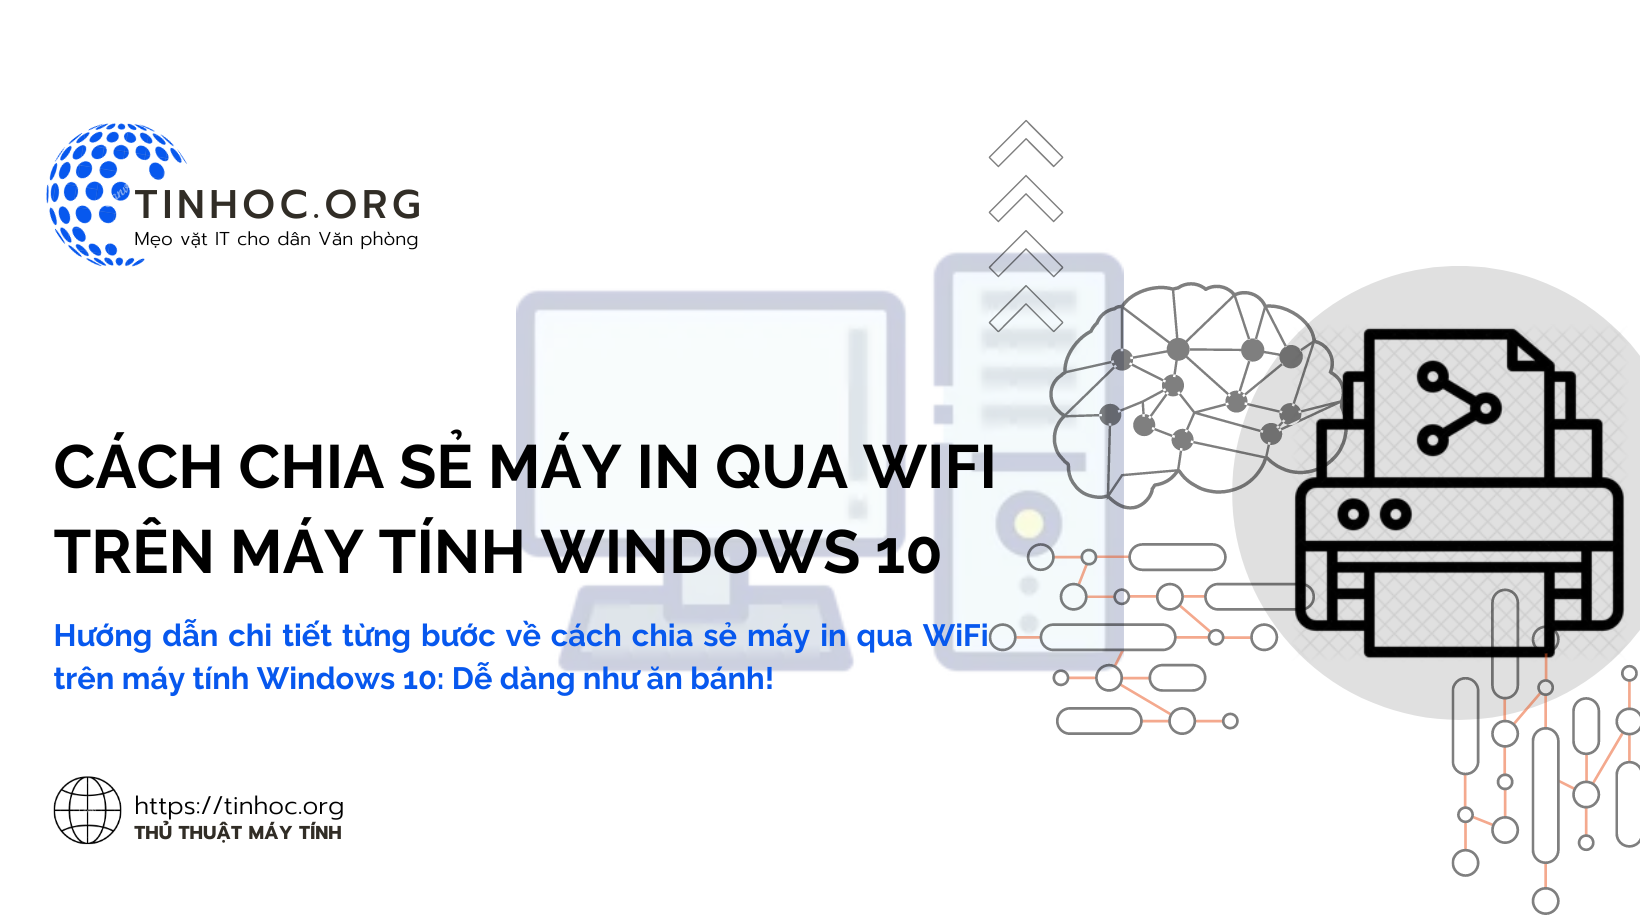 Hướng dẫn chi tiết từng bước về cách chia sẻ máy in qua WiFi trên máy tính Windows 10: Dễ dàng như ăn bánh!